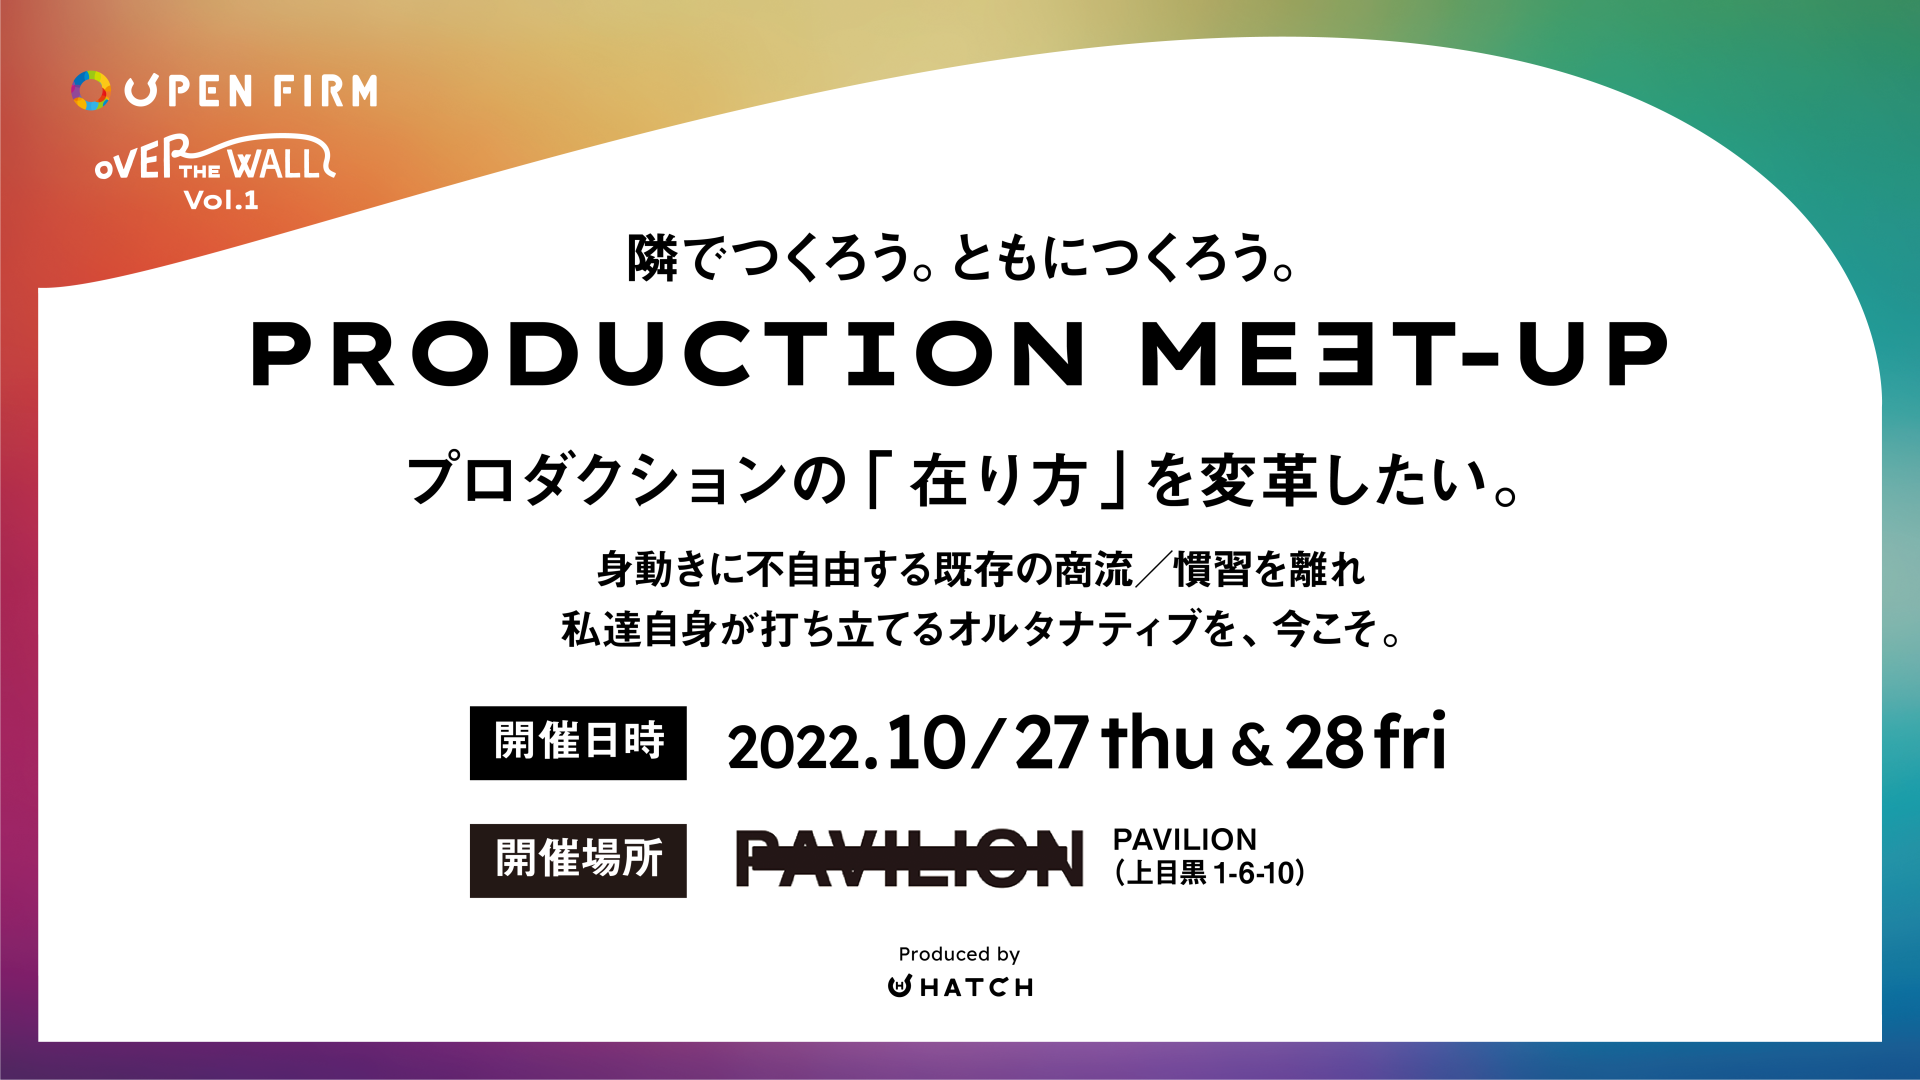 クリエイターが集いプロダクションの在り方を共に考えるイベント「PRODUCTION MEET-UP」開催！